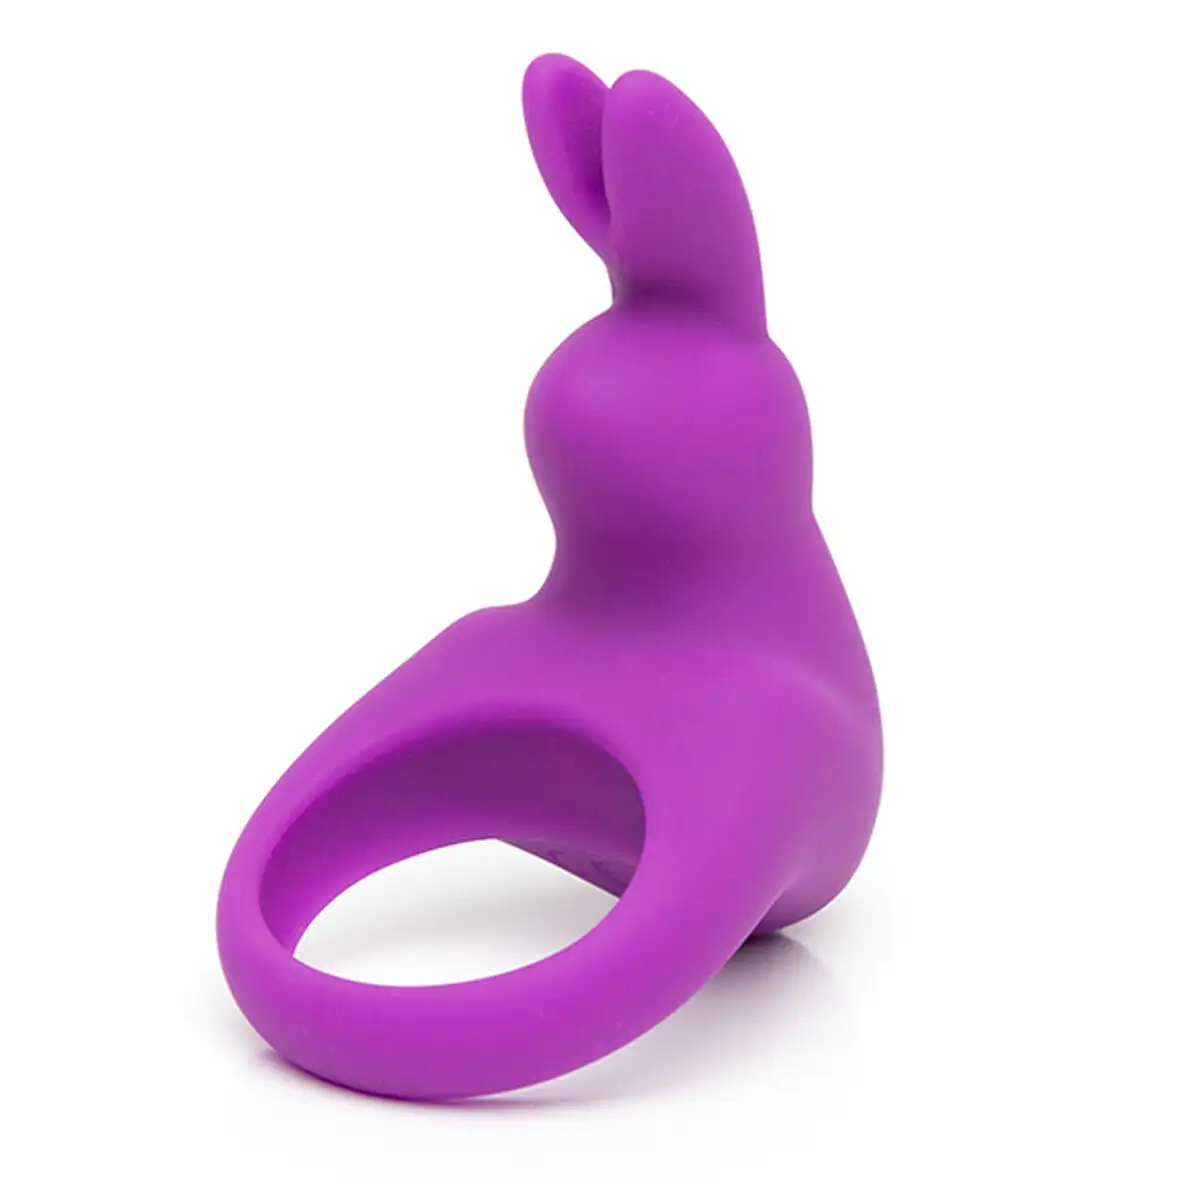 Anneau penis happy rabbit rabbit violet_3542. DIAYTAR SENEGAL - Votre Portail Vers l'Exclusivité. Explorez notre boutique en ligne pour trouver des produits uniques et exclusifs, conçus pour les amateurs de qualité.